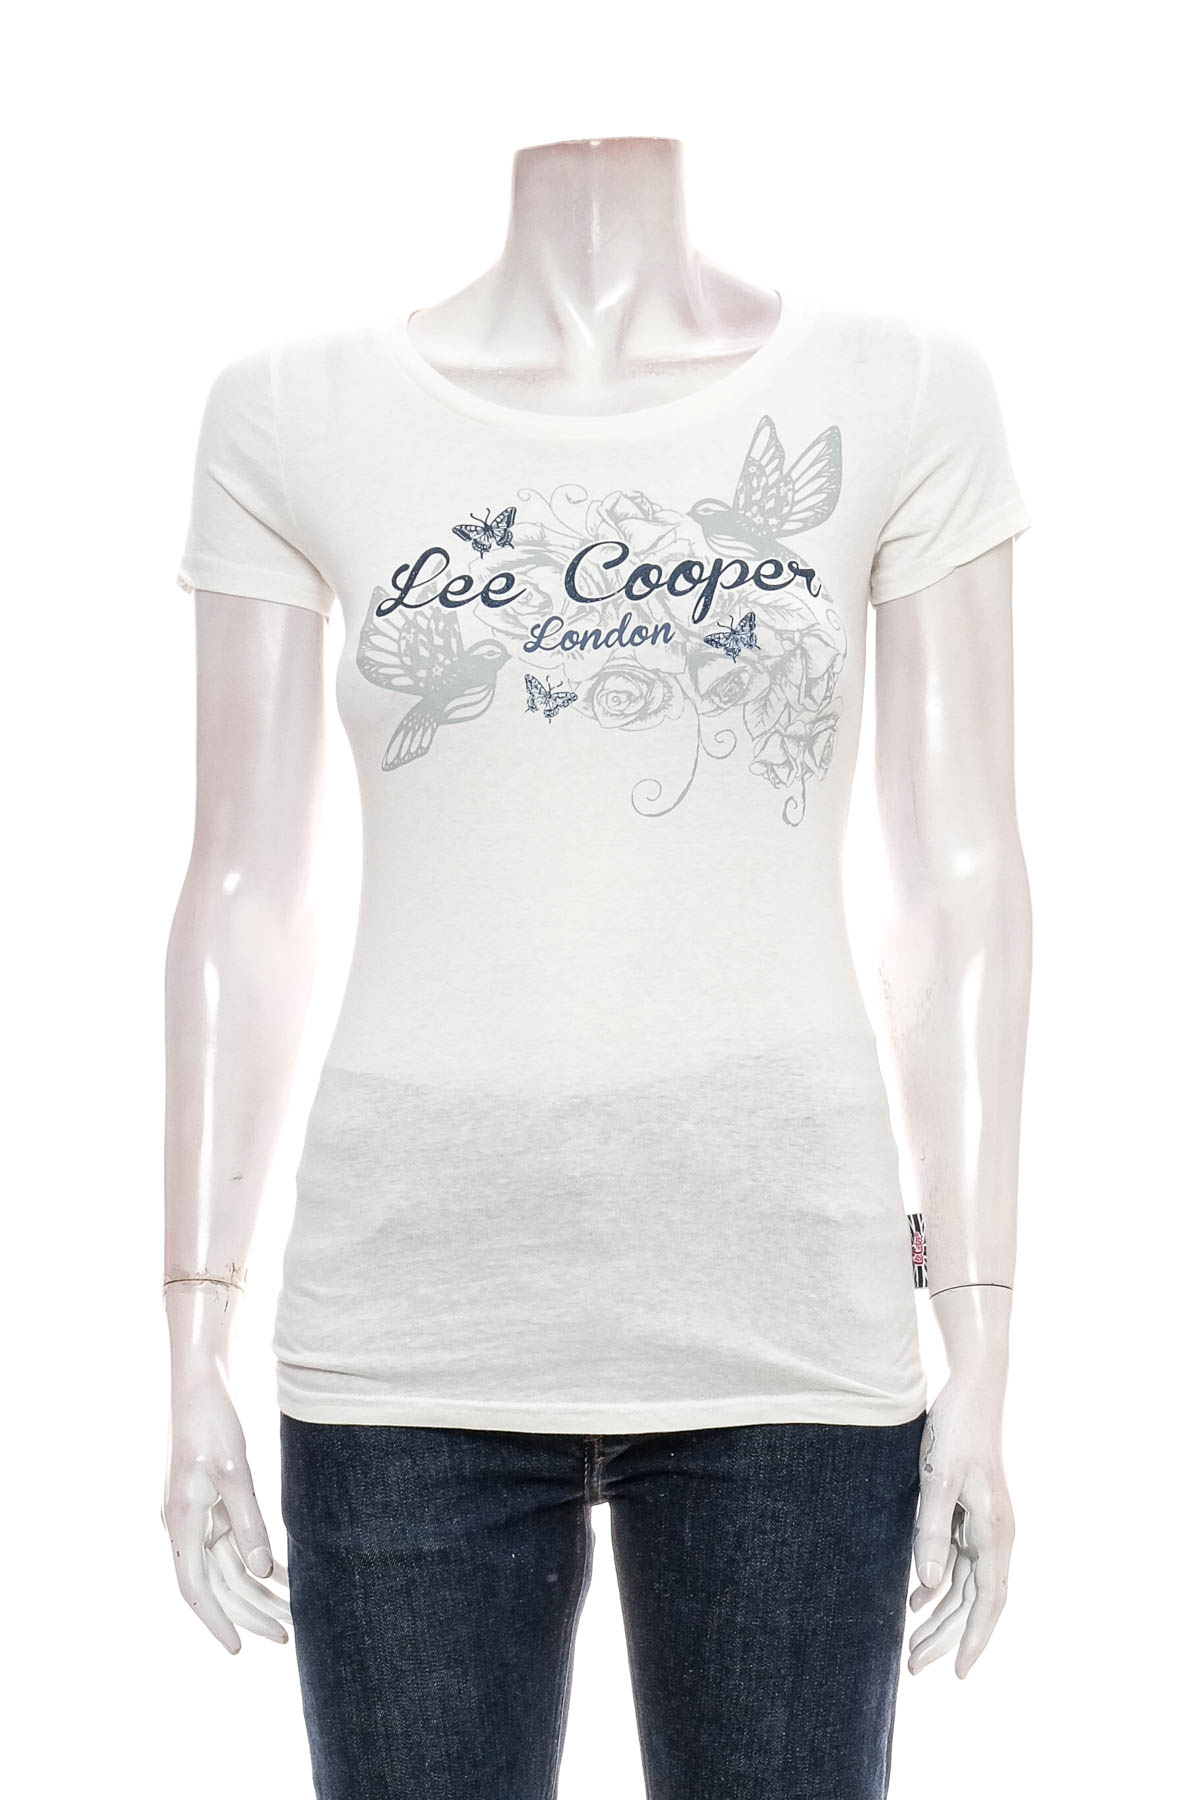 Γυναικεία μπλούζα - Lee Cooper - 0